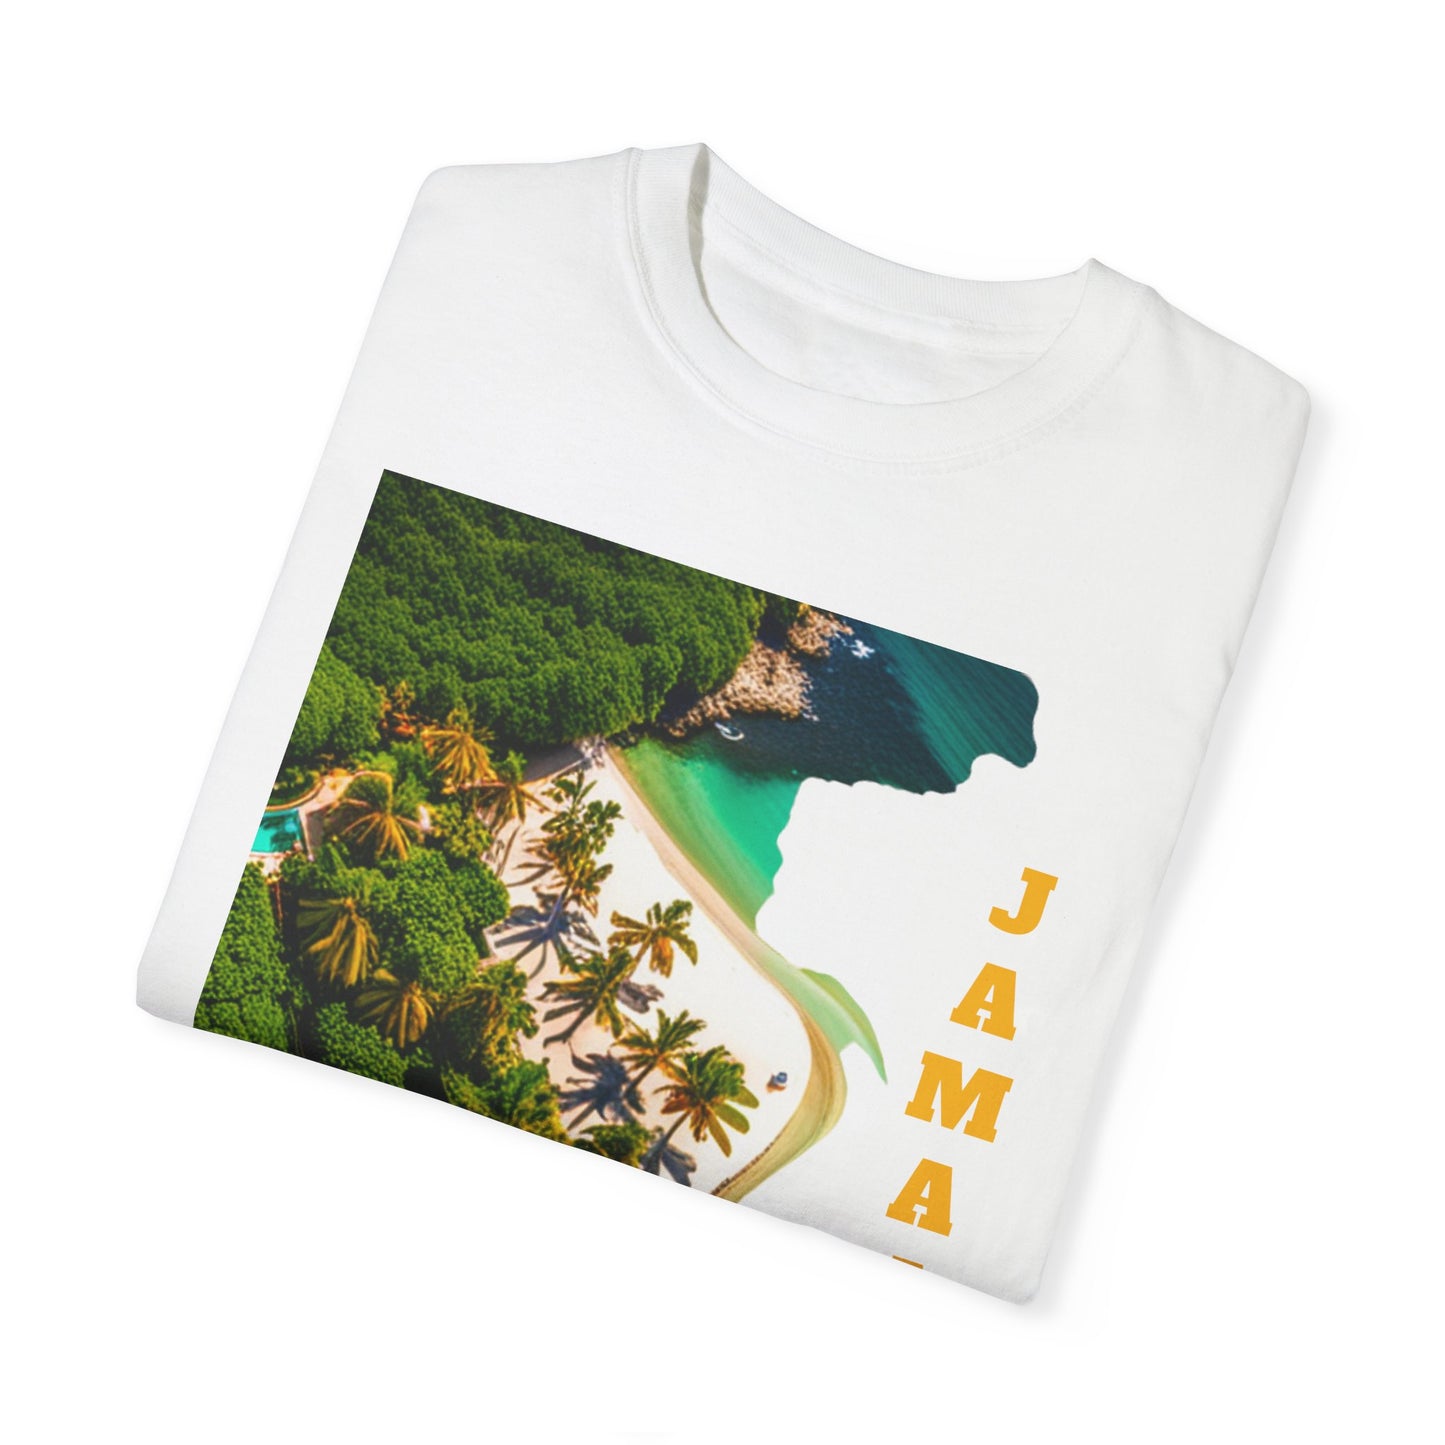 Jamaica T-shirt Unisex Garment-Dyed T-shirt